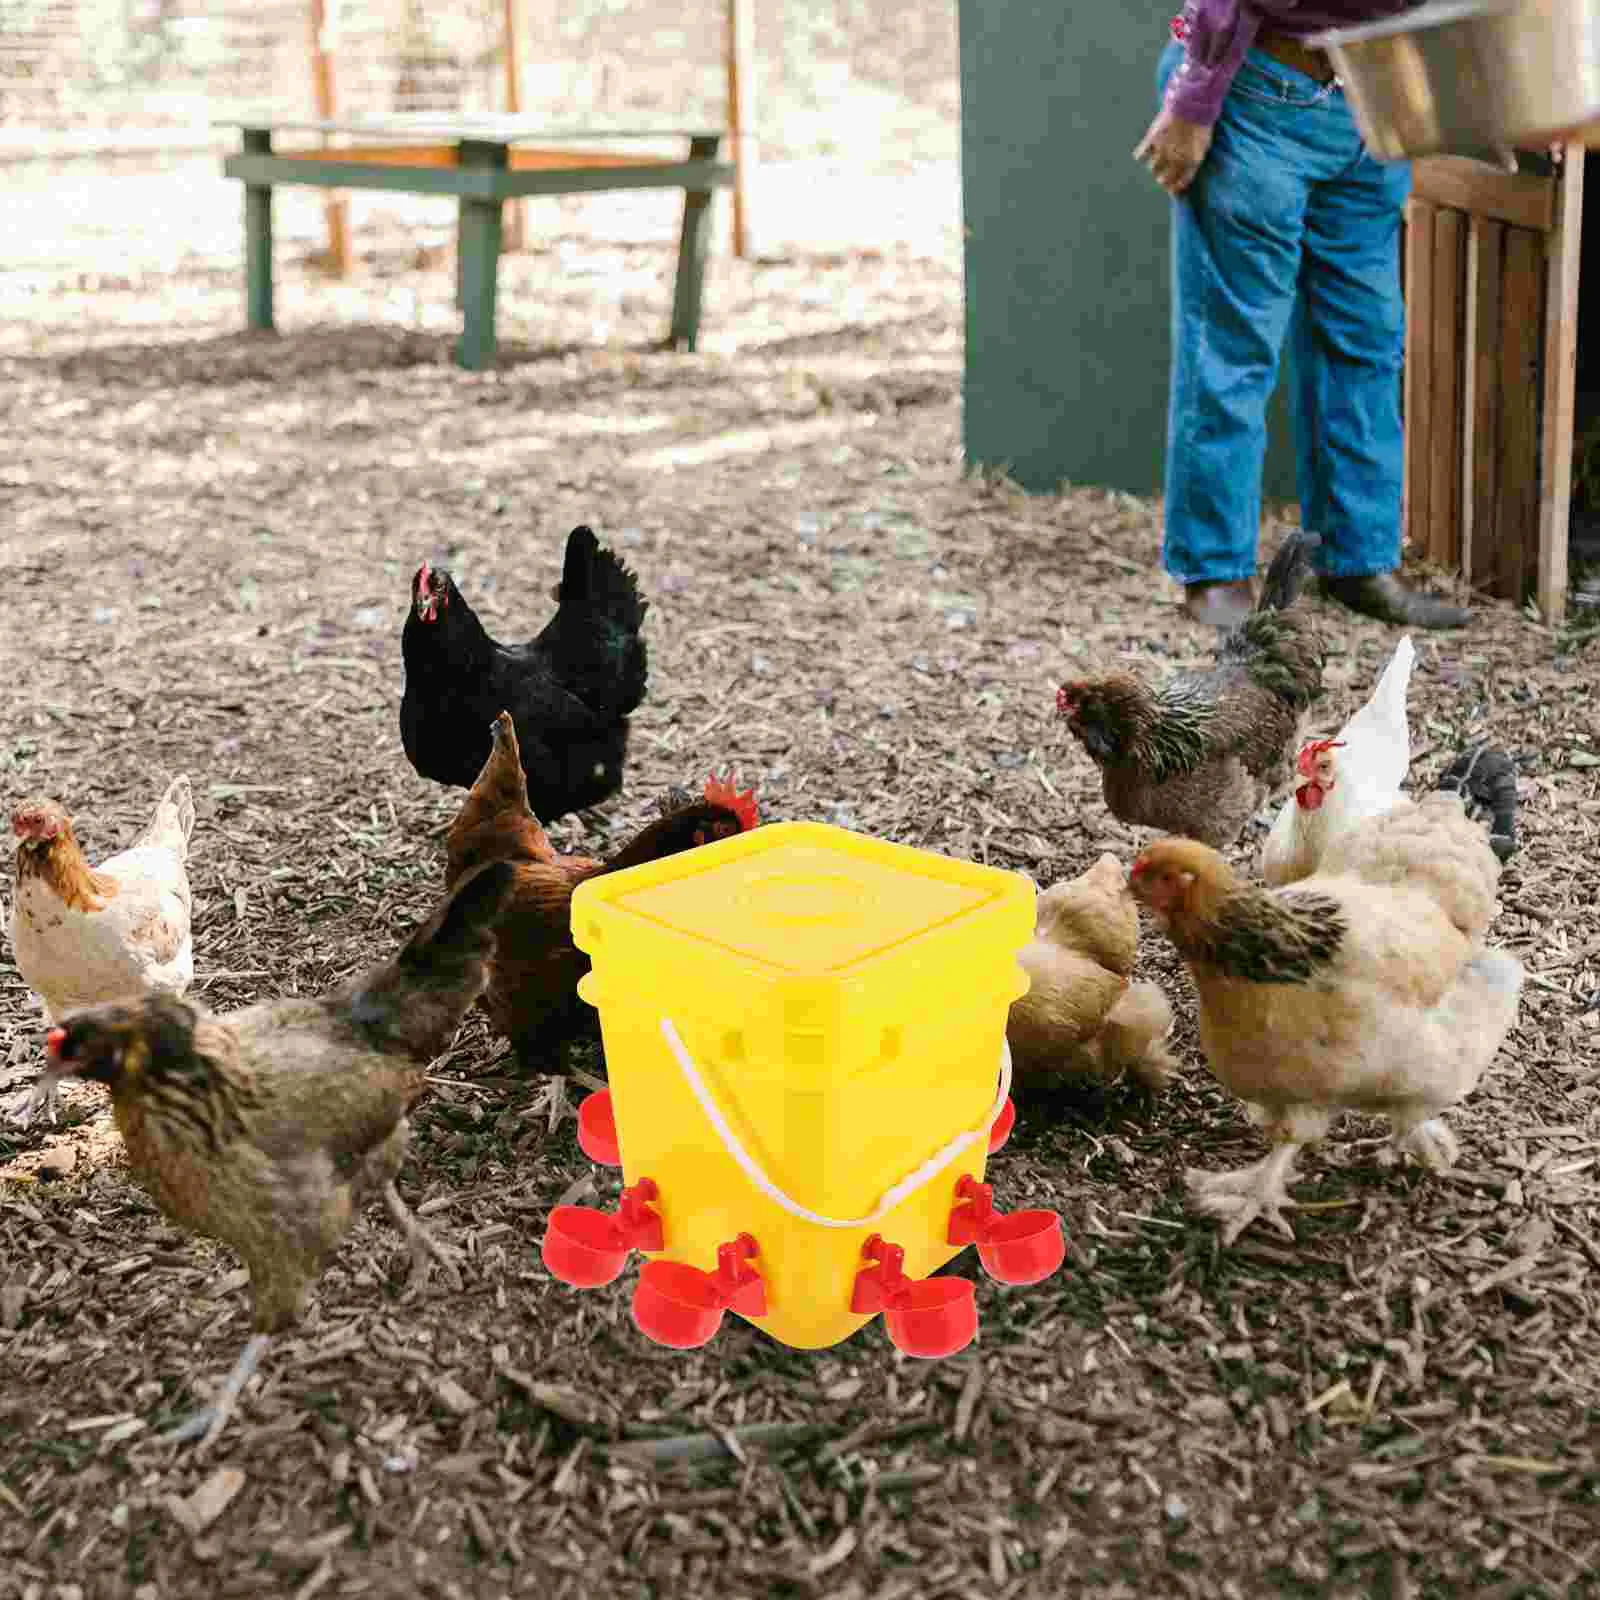 

Кормушки для цыплят автоматический контейнер для пищевых продуктов для домашней птицы, пластиковая банка для цыплят